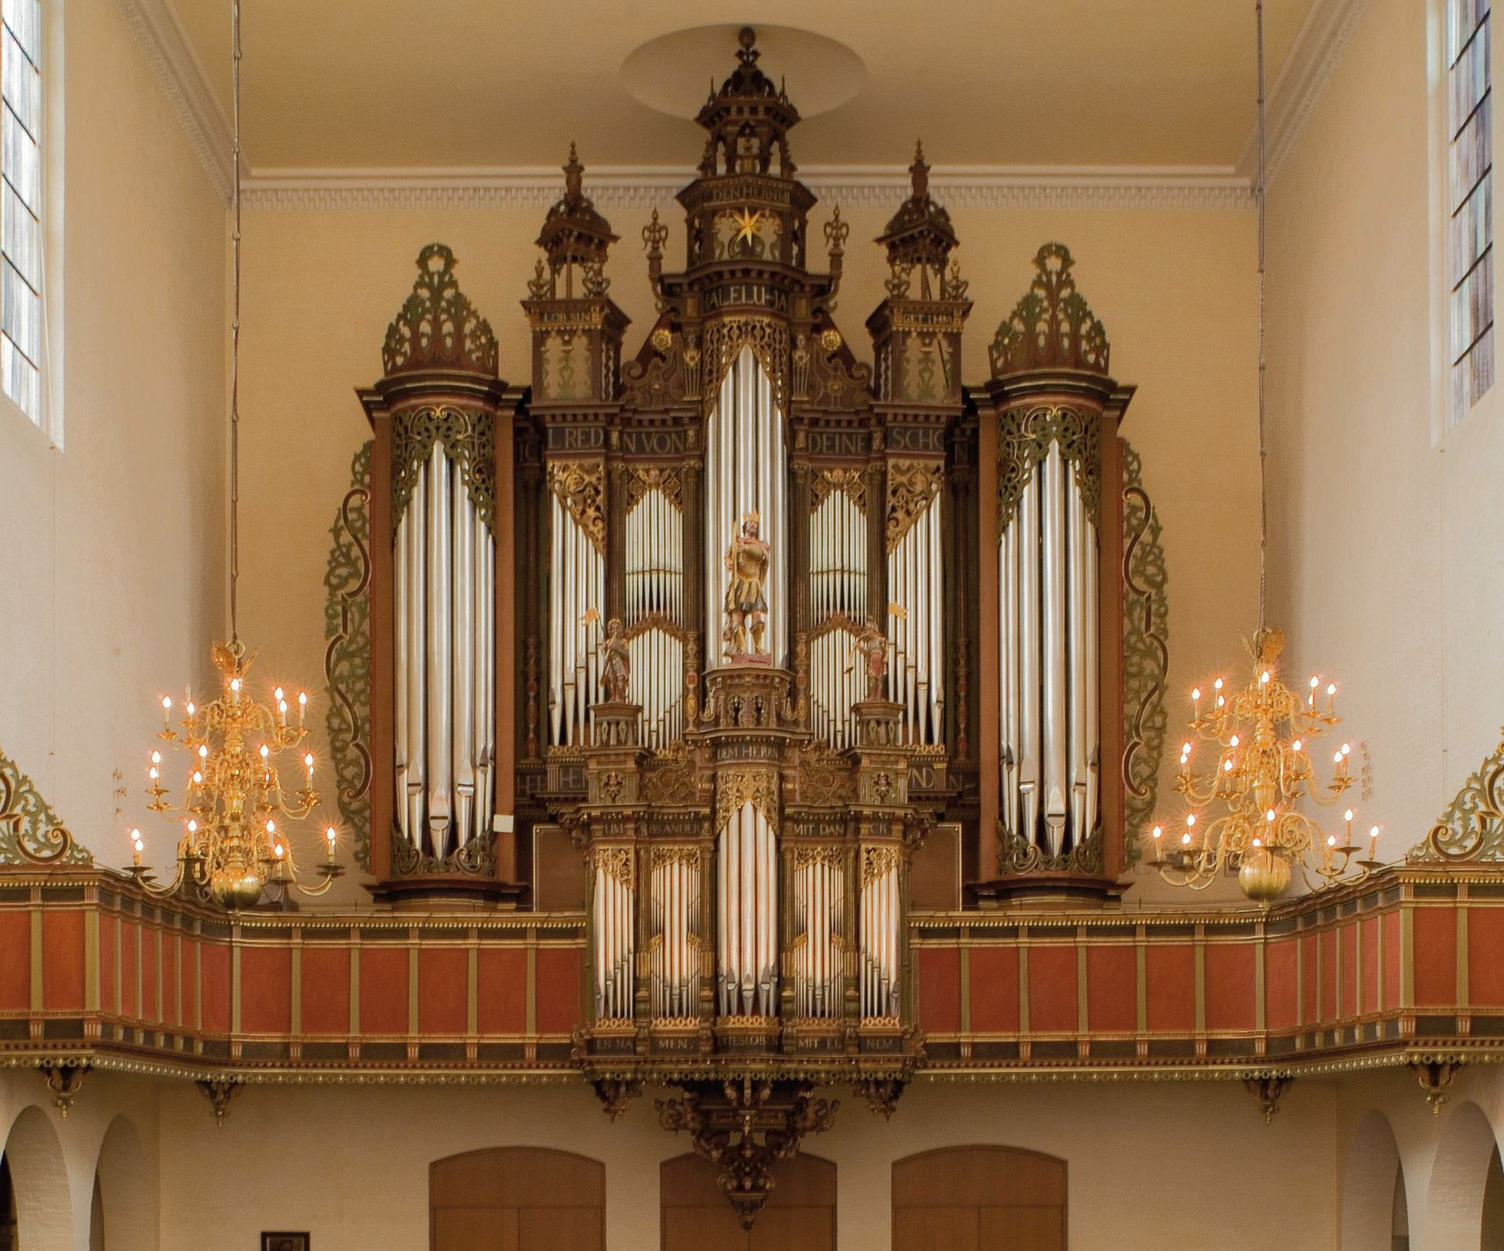 Die Orgel in der Kirche St. Ansgarii. Ein großes Musikinstrument mit zahlreichen undaufwendigen Verzierungen